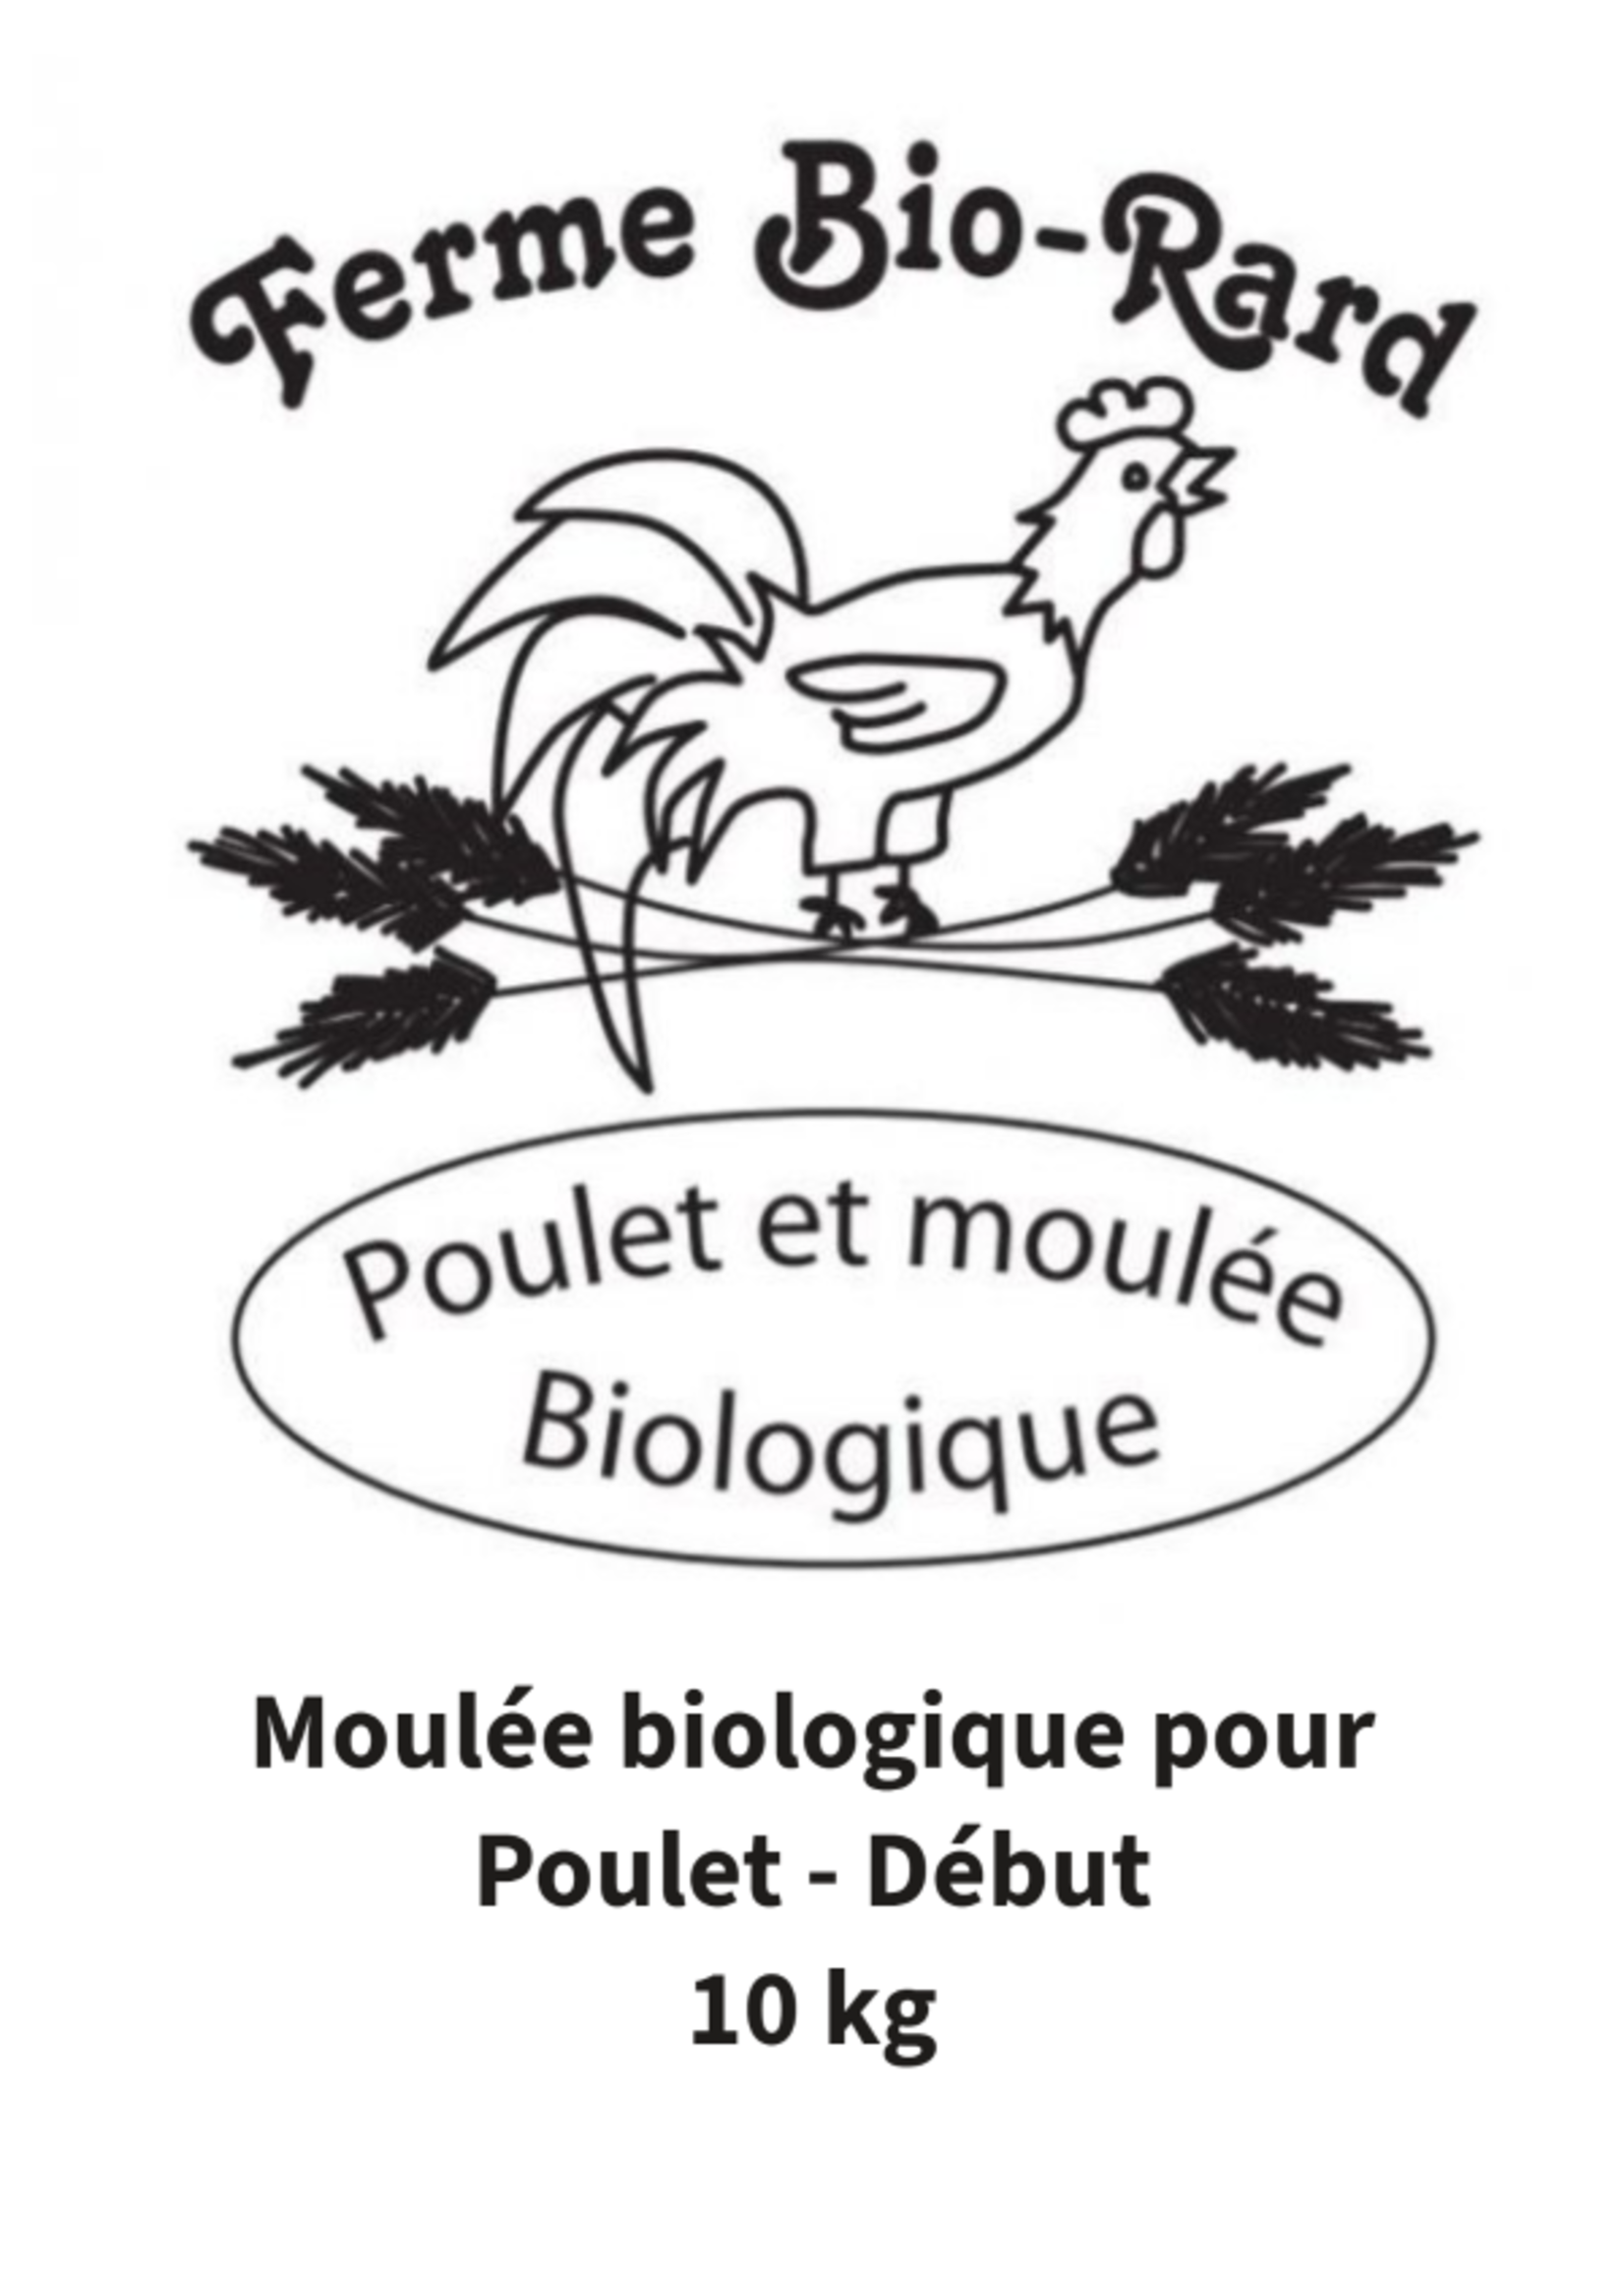 Bio Rard Bio-Rard  Moulée biologique pour poulet - Début 21%